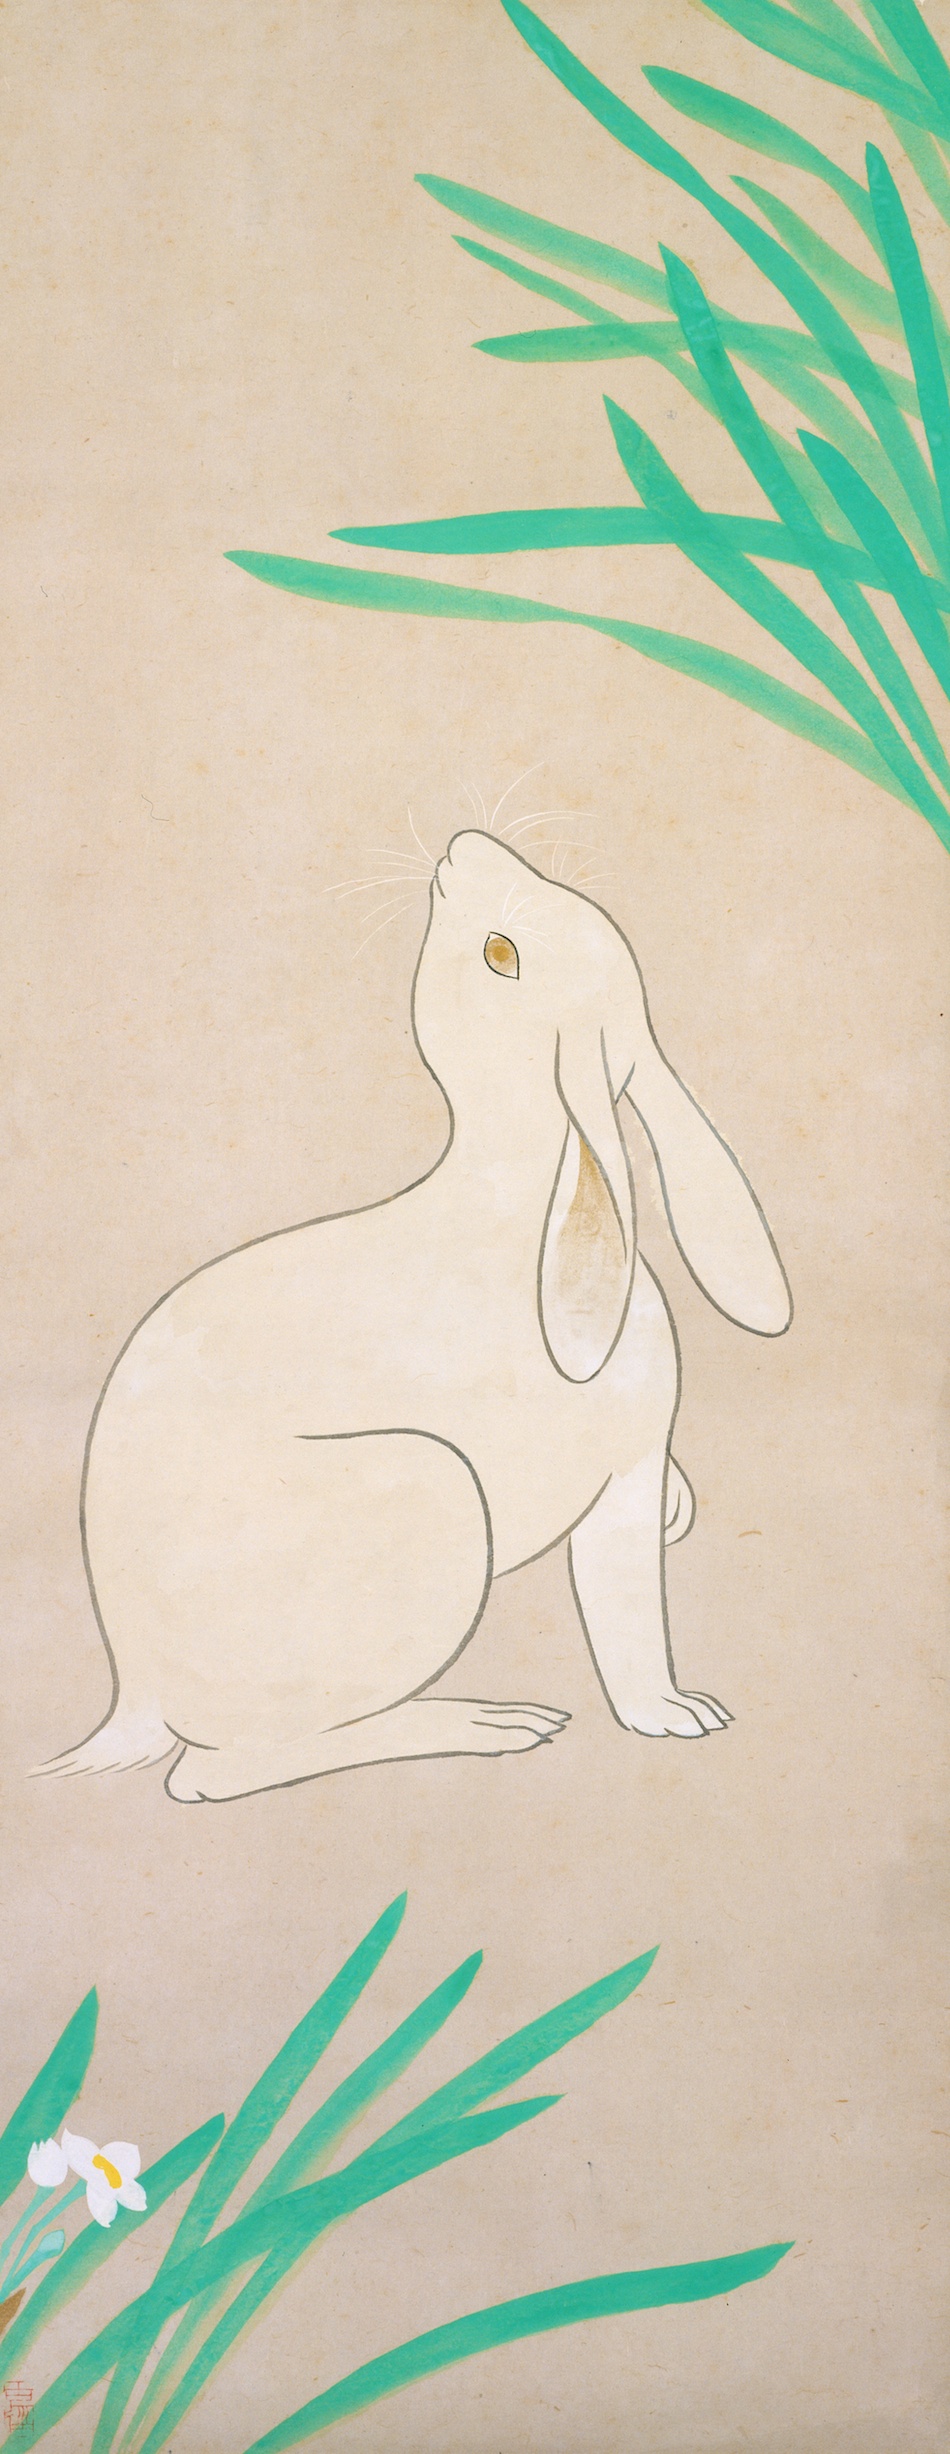 小林古径,Kobayashi Kokei『兎図』（東京富士美術館所蔵）「東京富士美術館収蔵品データベース」収録